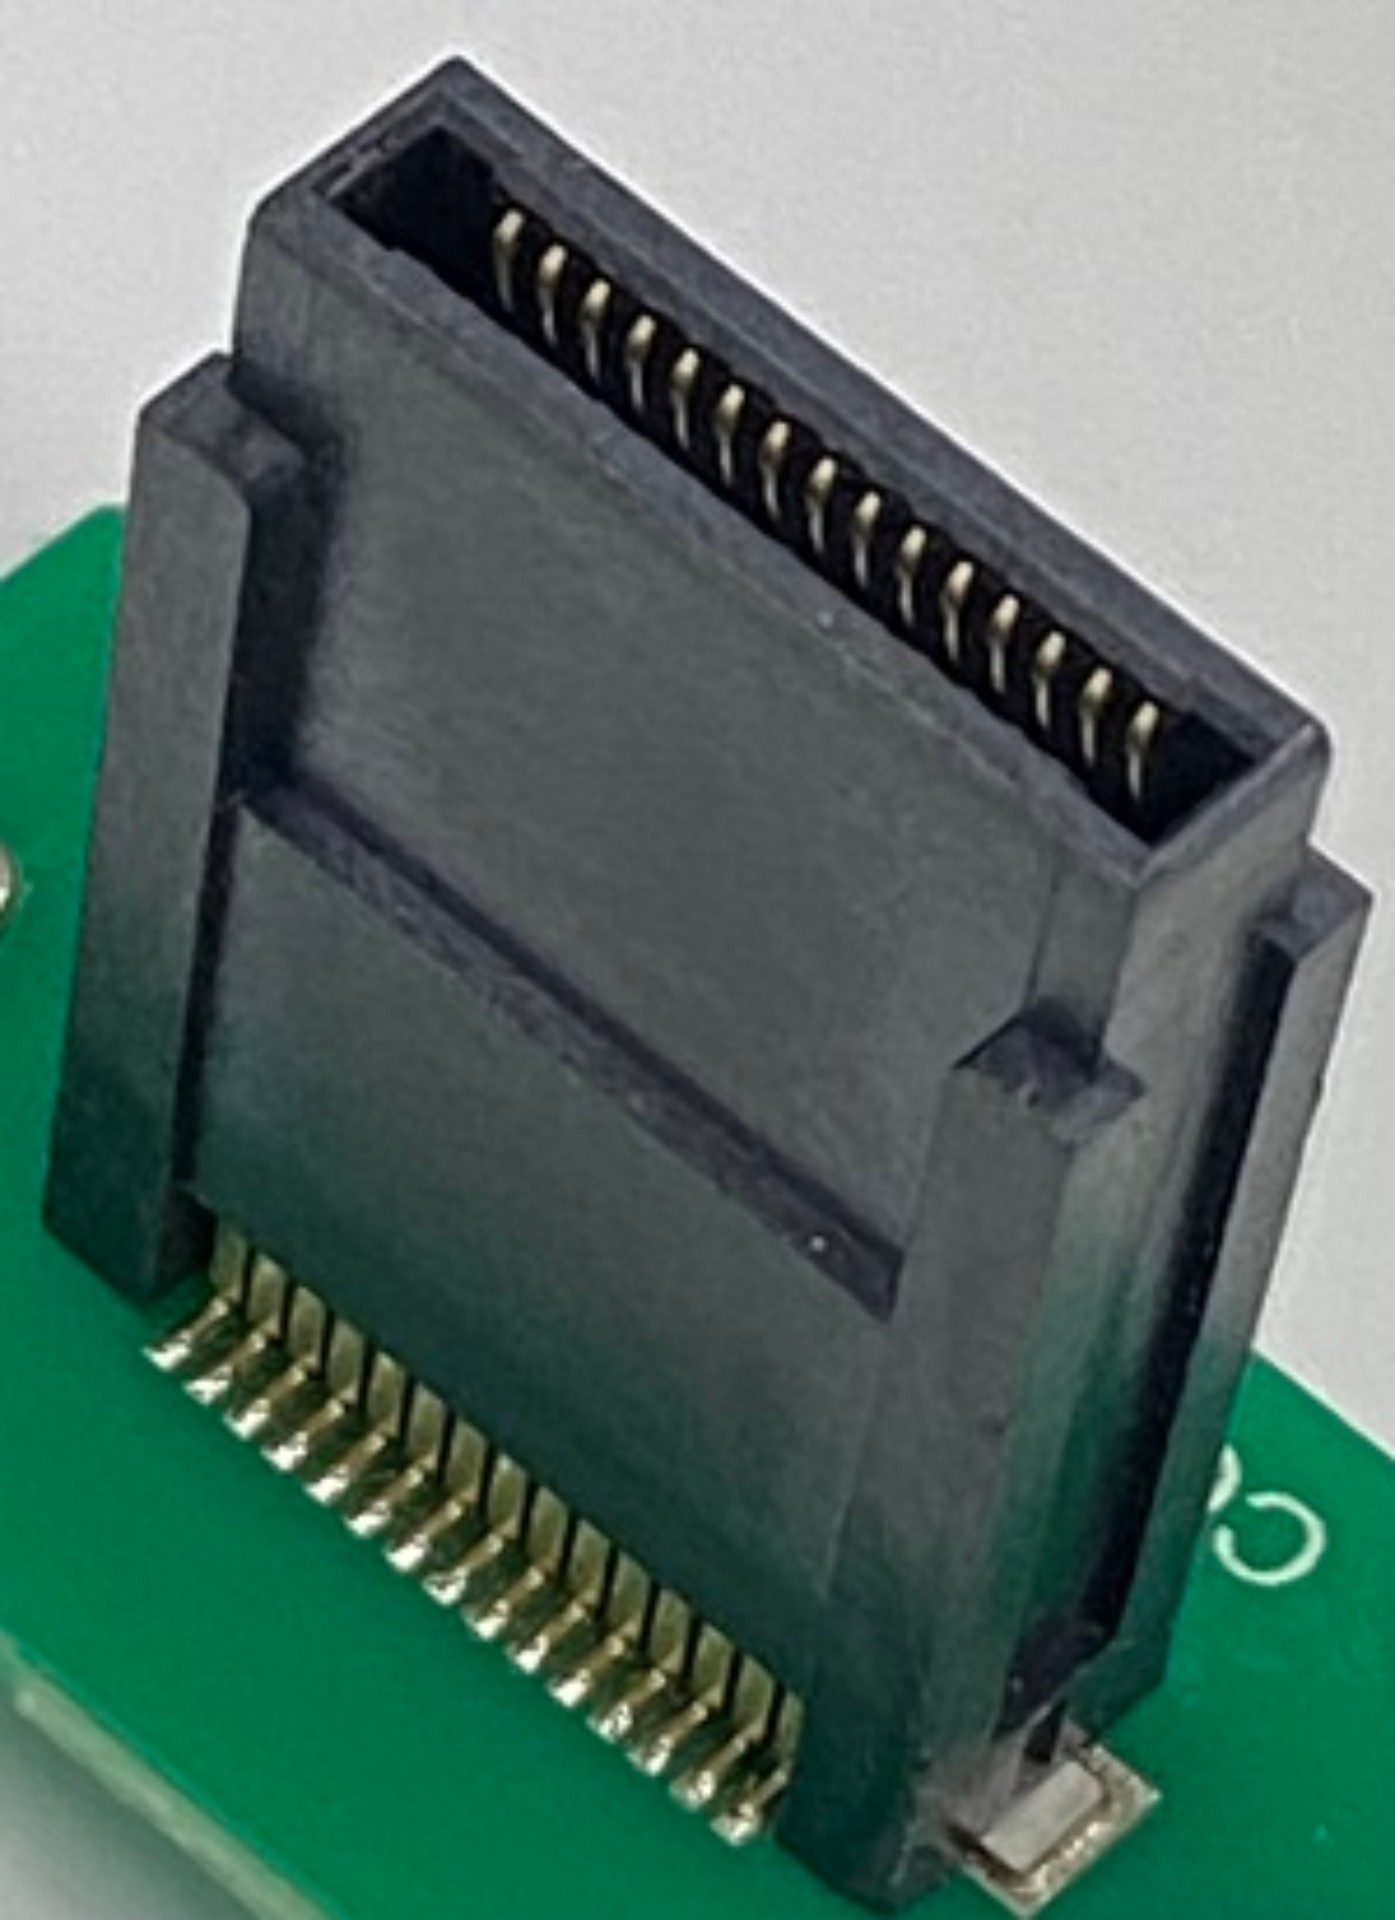 浮动式板对板连接器 - 构建可靠连接的优势